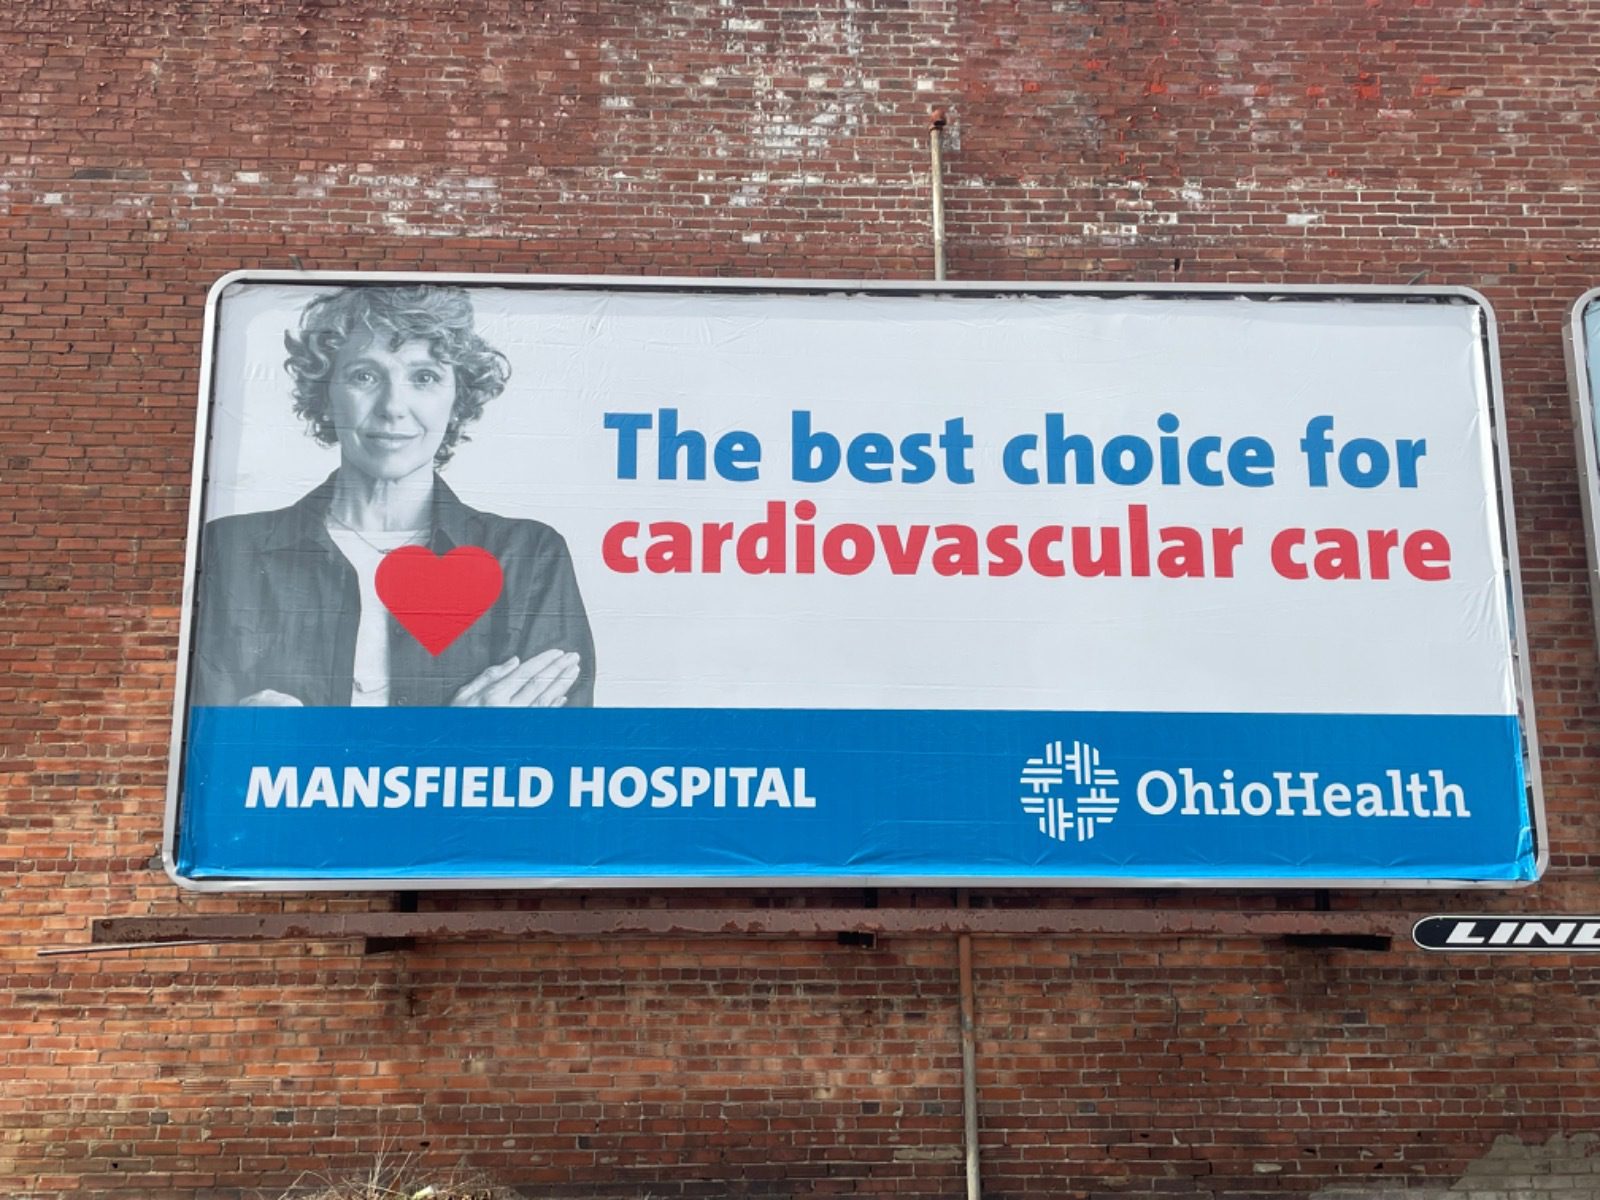 OhioHealth, Ohio Health, OhioHealth billboard, cardio care billboard